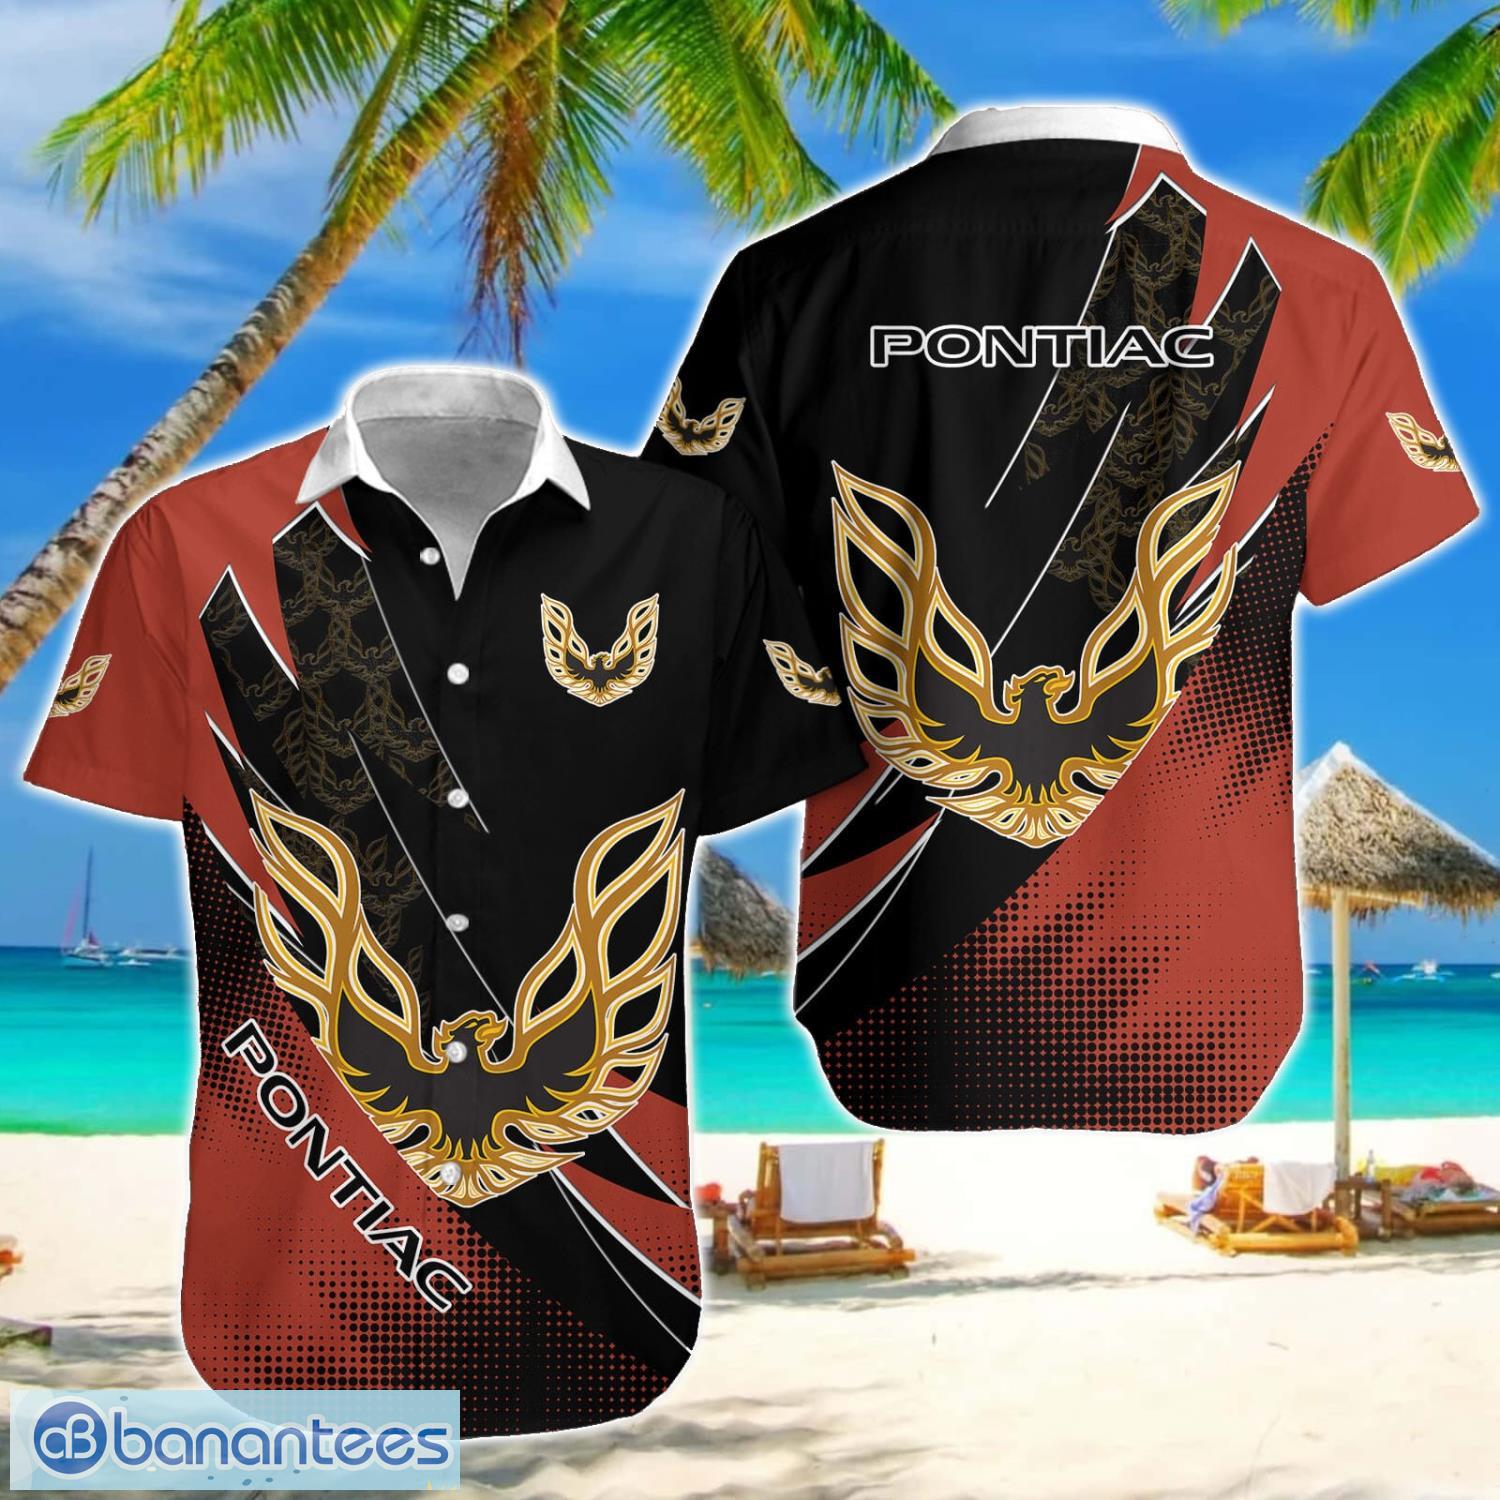 Firebird Pontiac 3D Printing Hawaiian Shirt For Men And Women Beach Shirt Summer Gift Product Photo 1